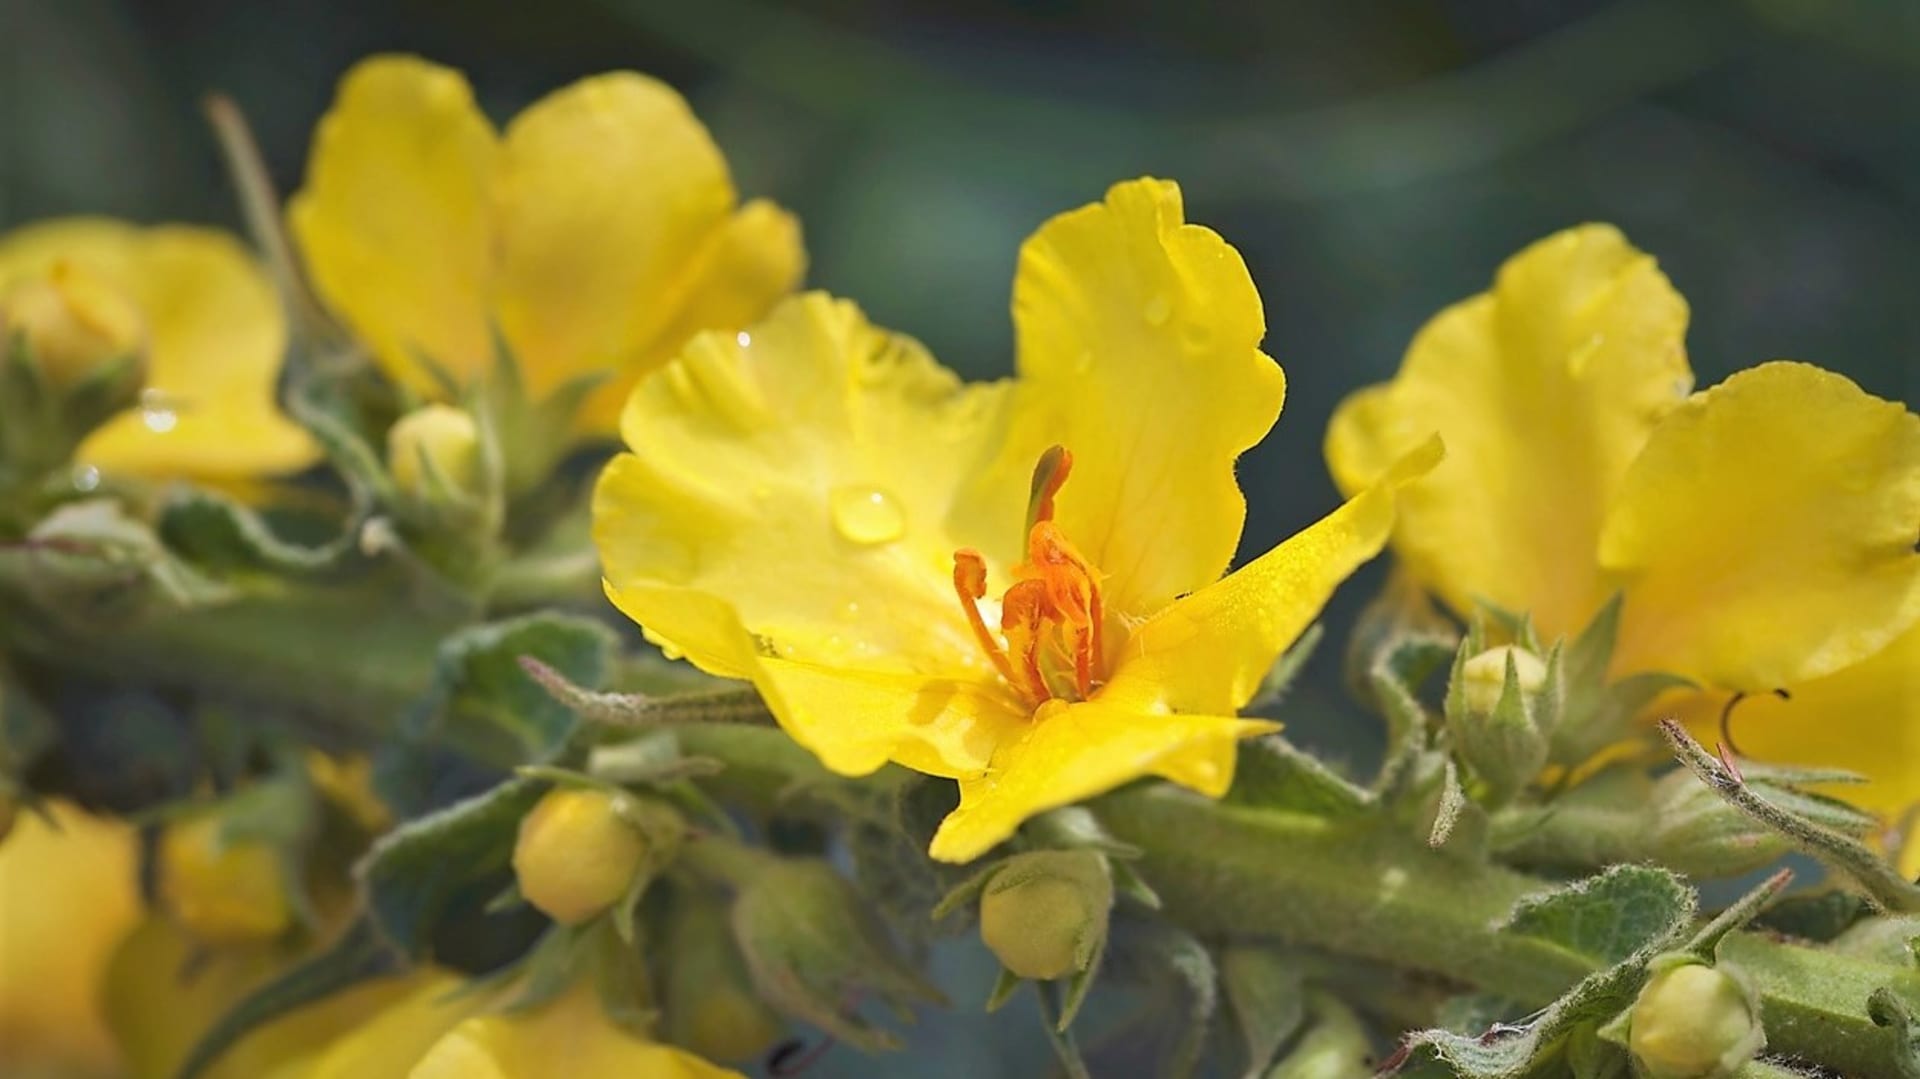 Divizna velkokvětá: Květy divizny velkokvěté je nutné otrhávat jednotlivě, postupně jak nakvétají a jen za slunného počasí. Sušení musí být rychlé a jako u jedné z mála léčivek se doporučuje sušení na přímém slunci.